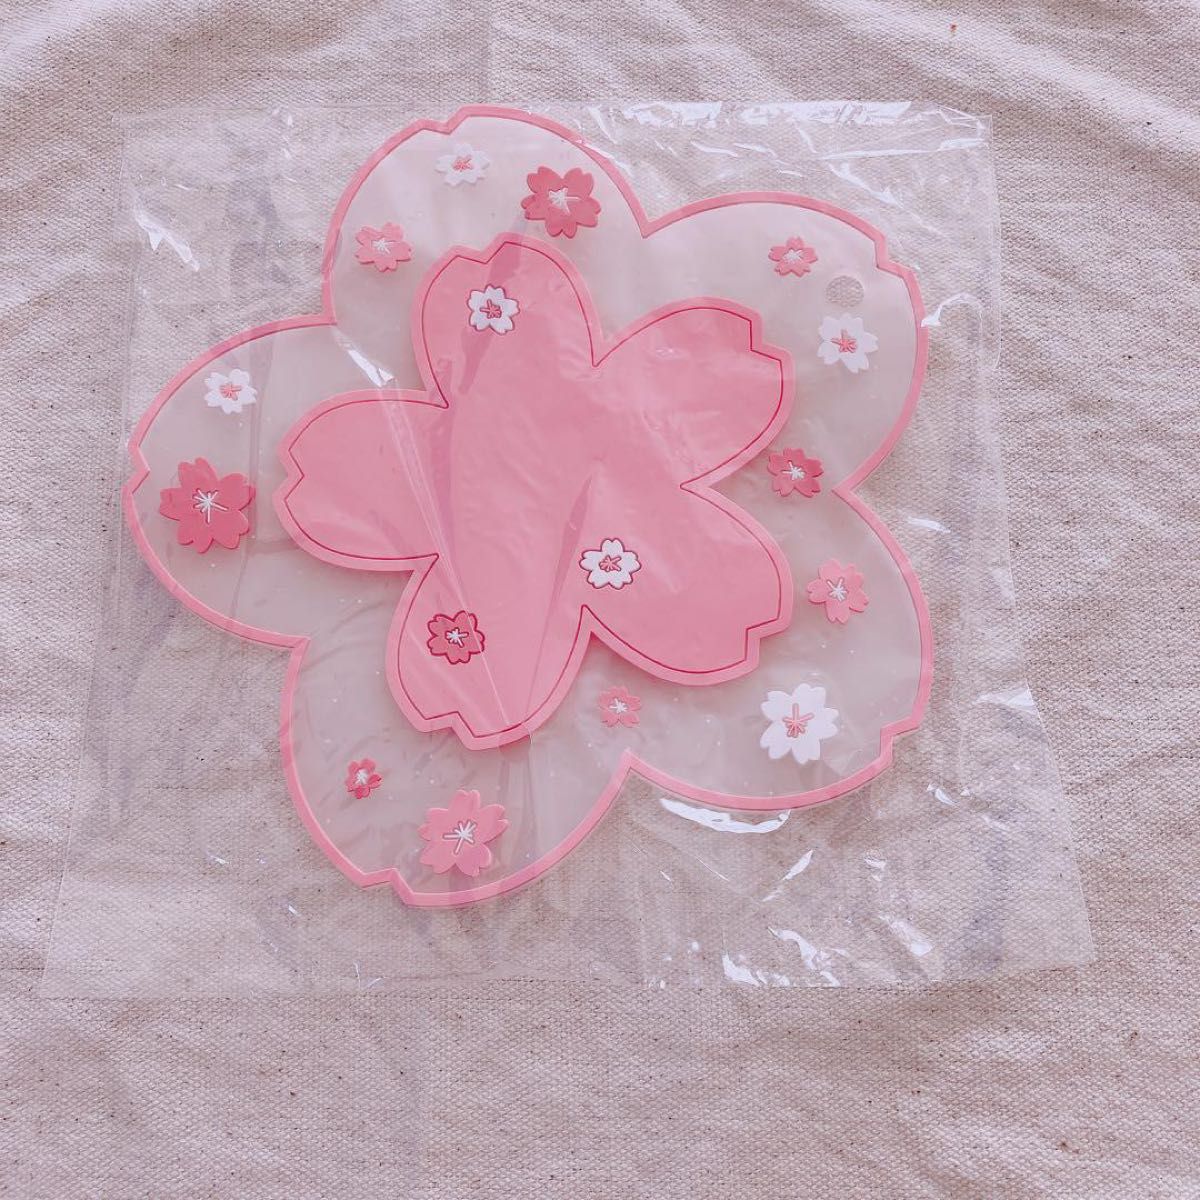 【未使用品 】コースター 桜 花柄 和柄 かわいい ピンク インテリア 春 シリコン